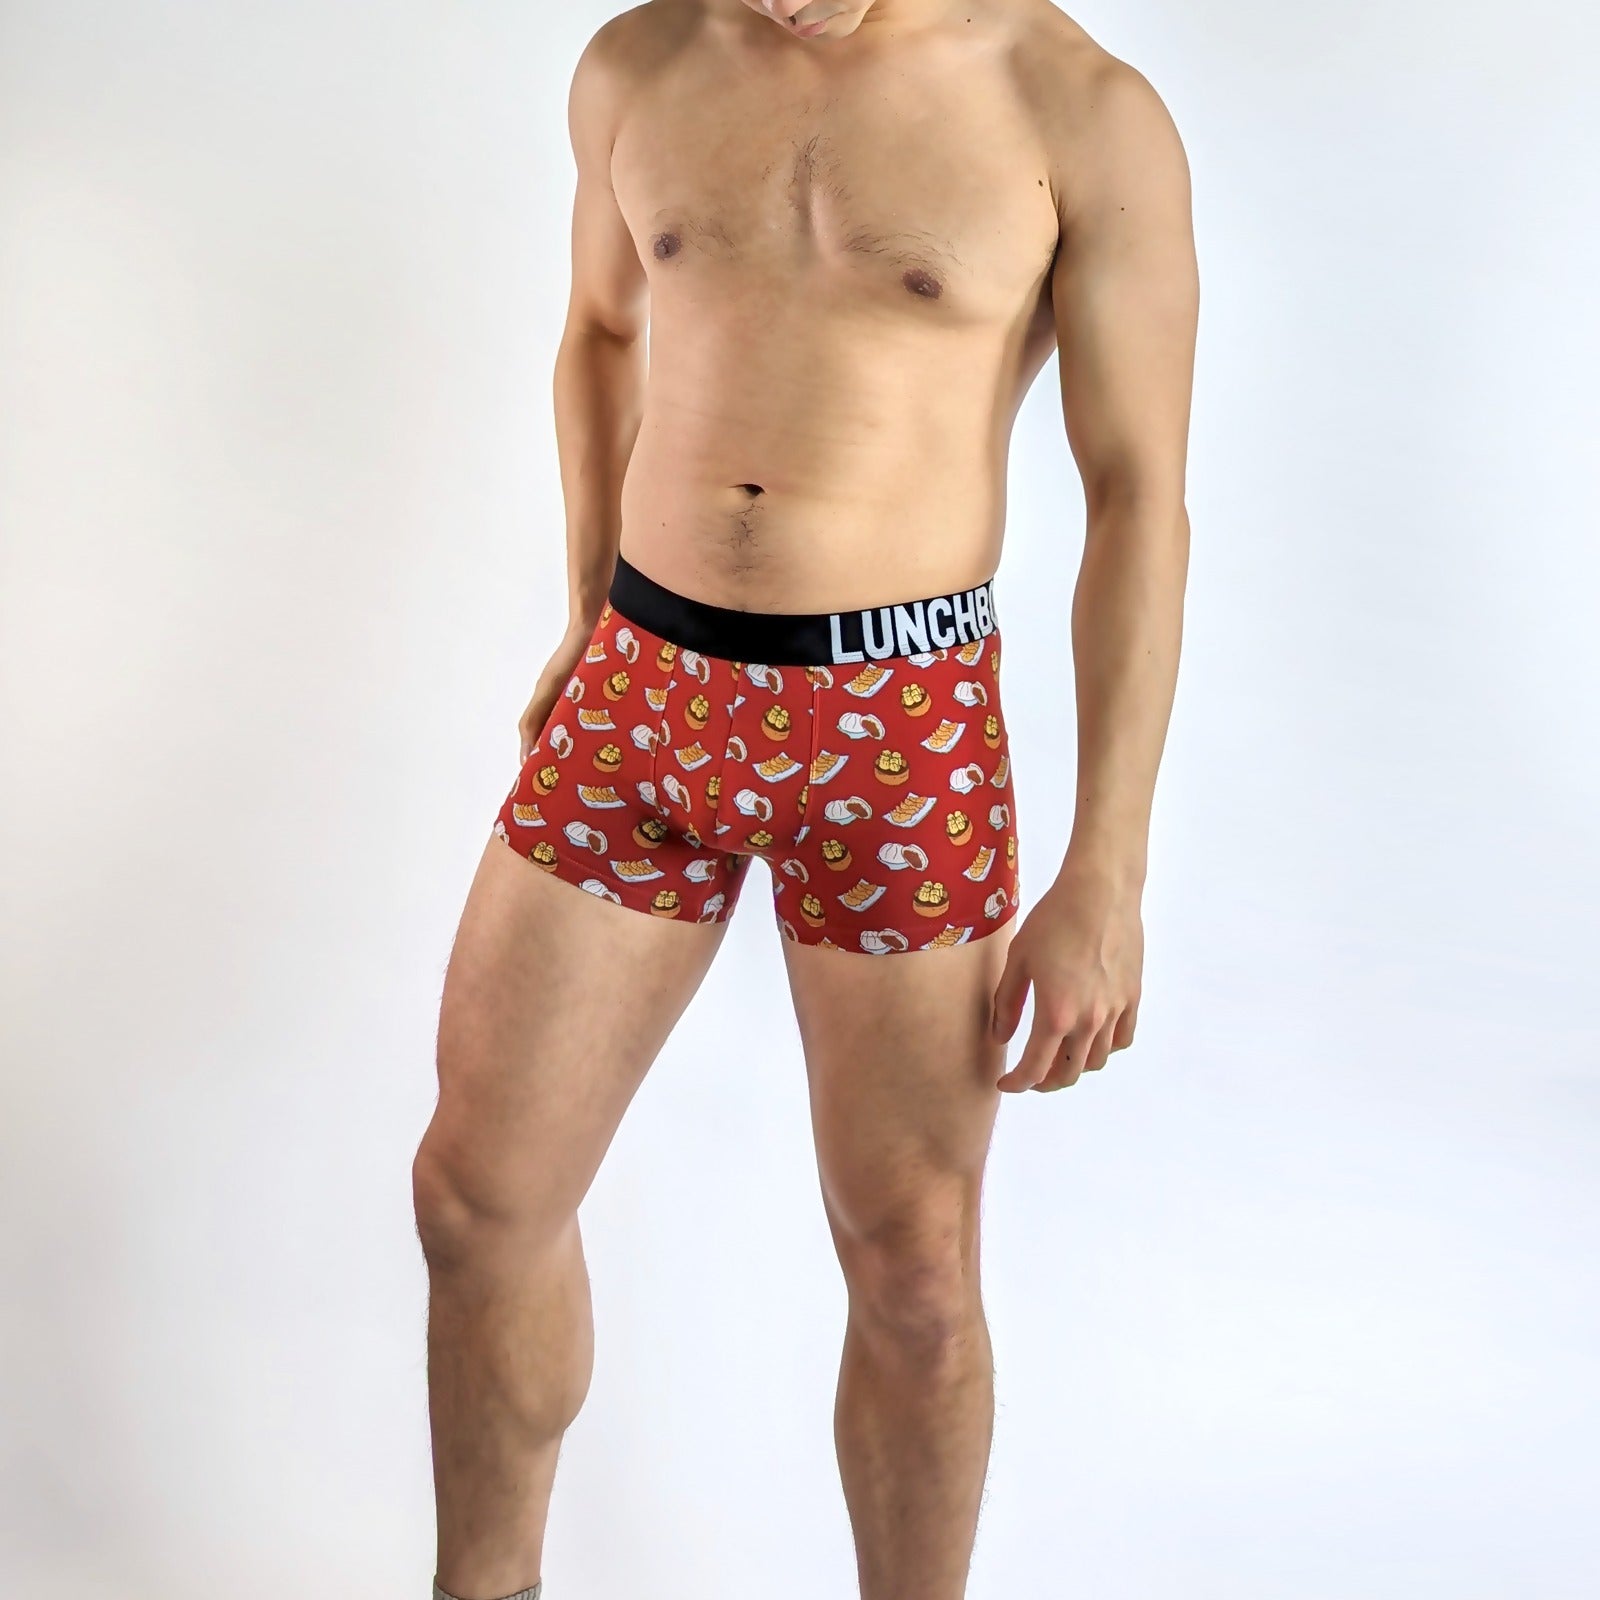 Subreef Boxer Shorts Dollar Smile underwear